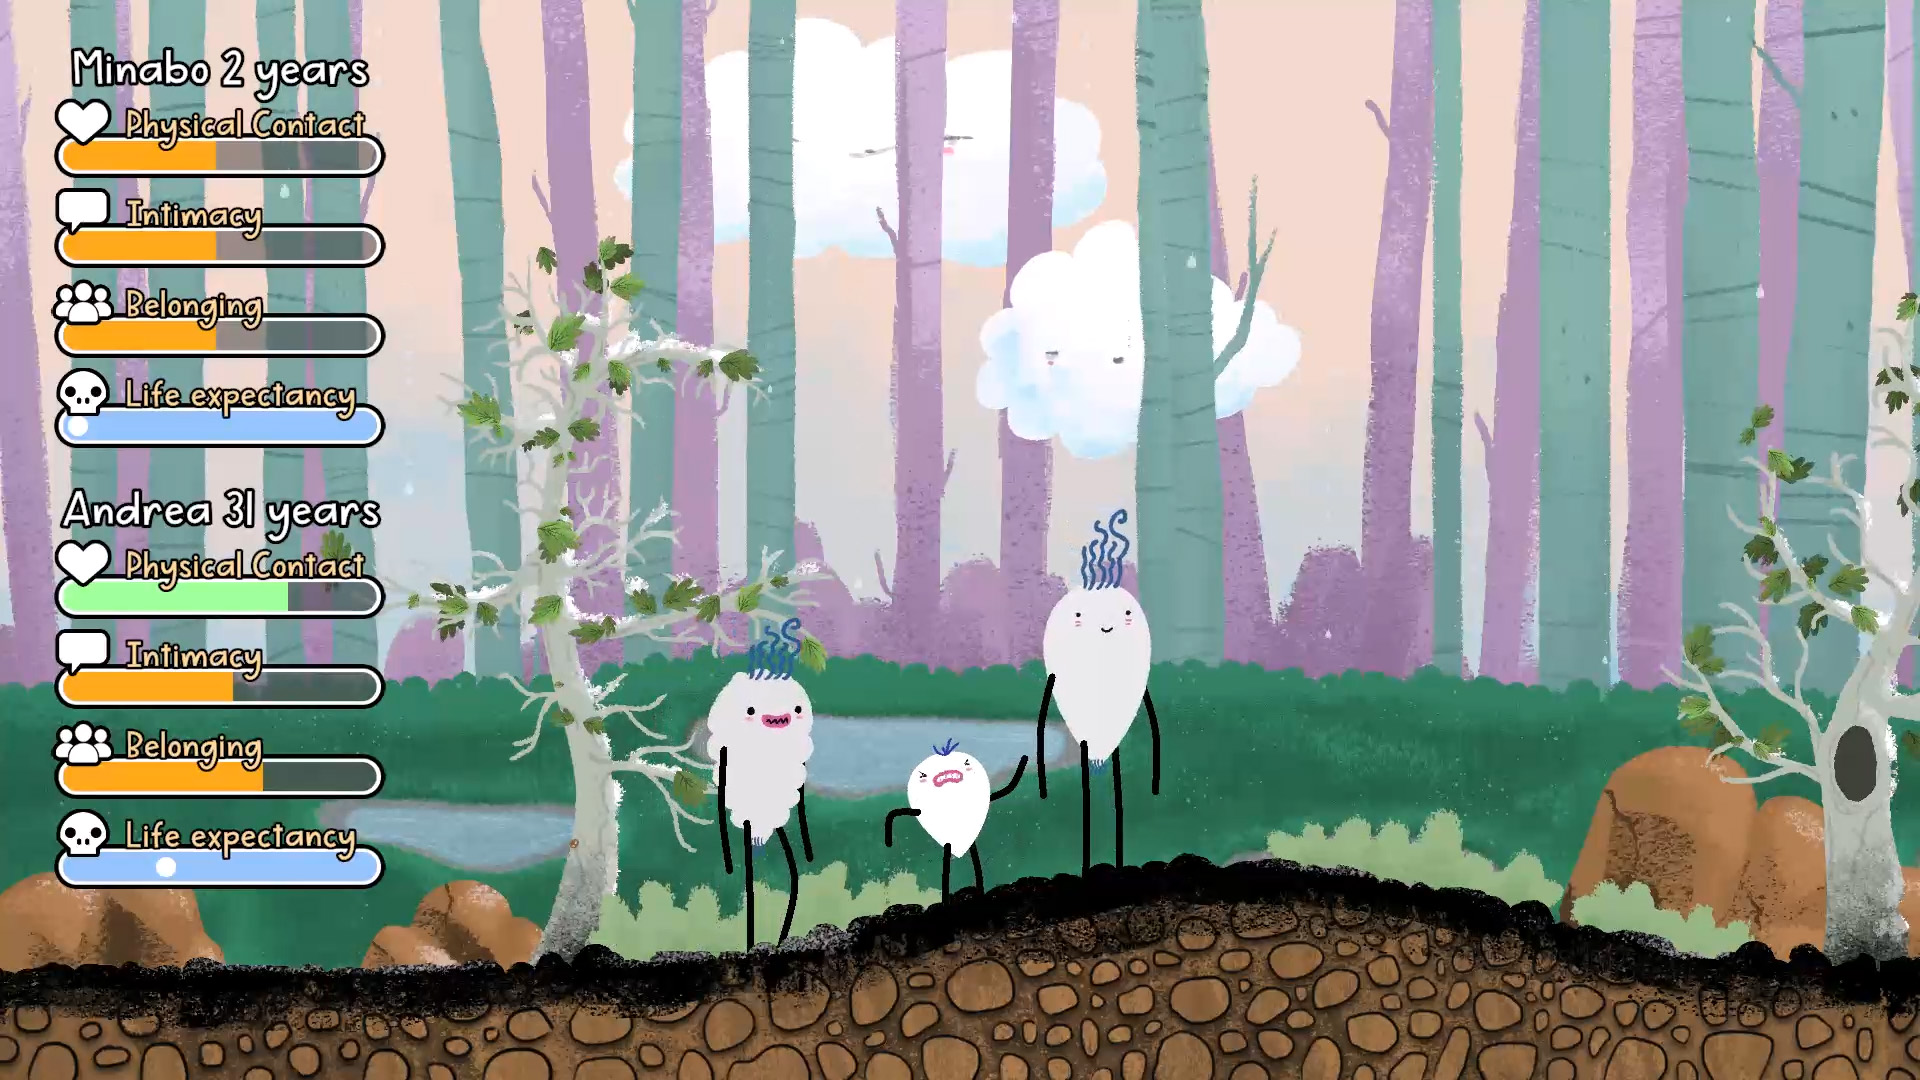 Captura de pantalla del videojuego "Minabo - a walk through life"